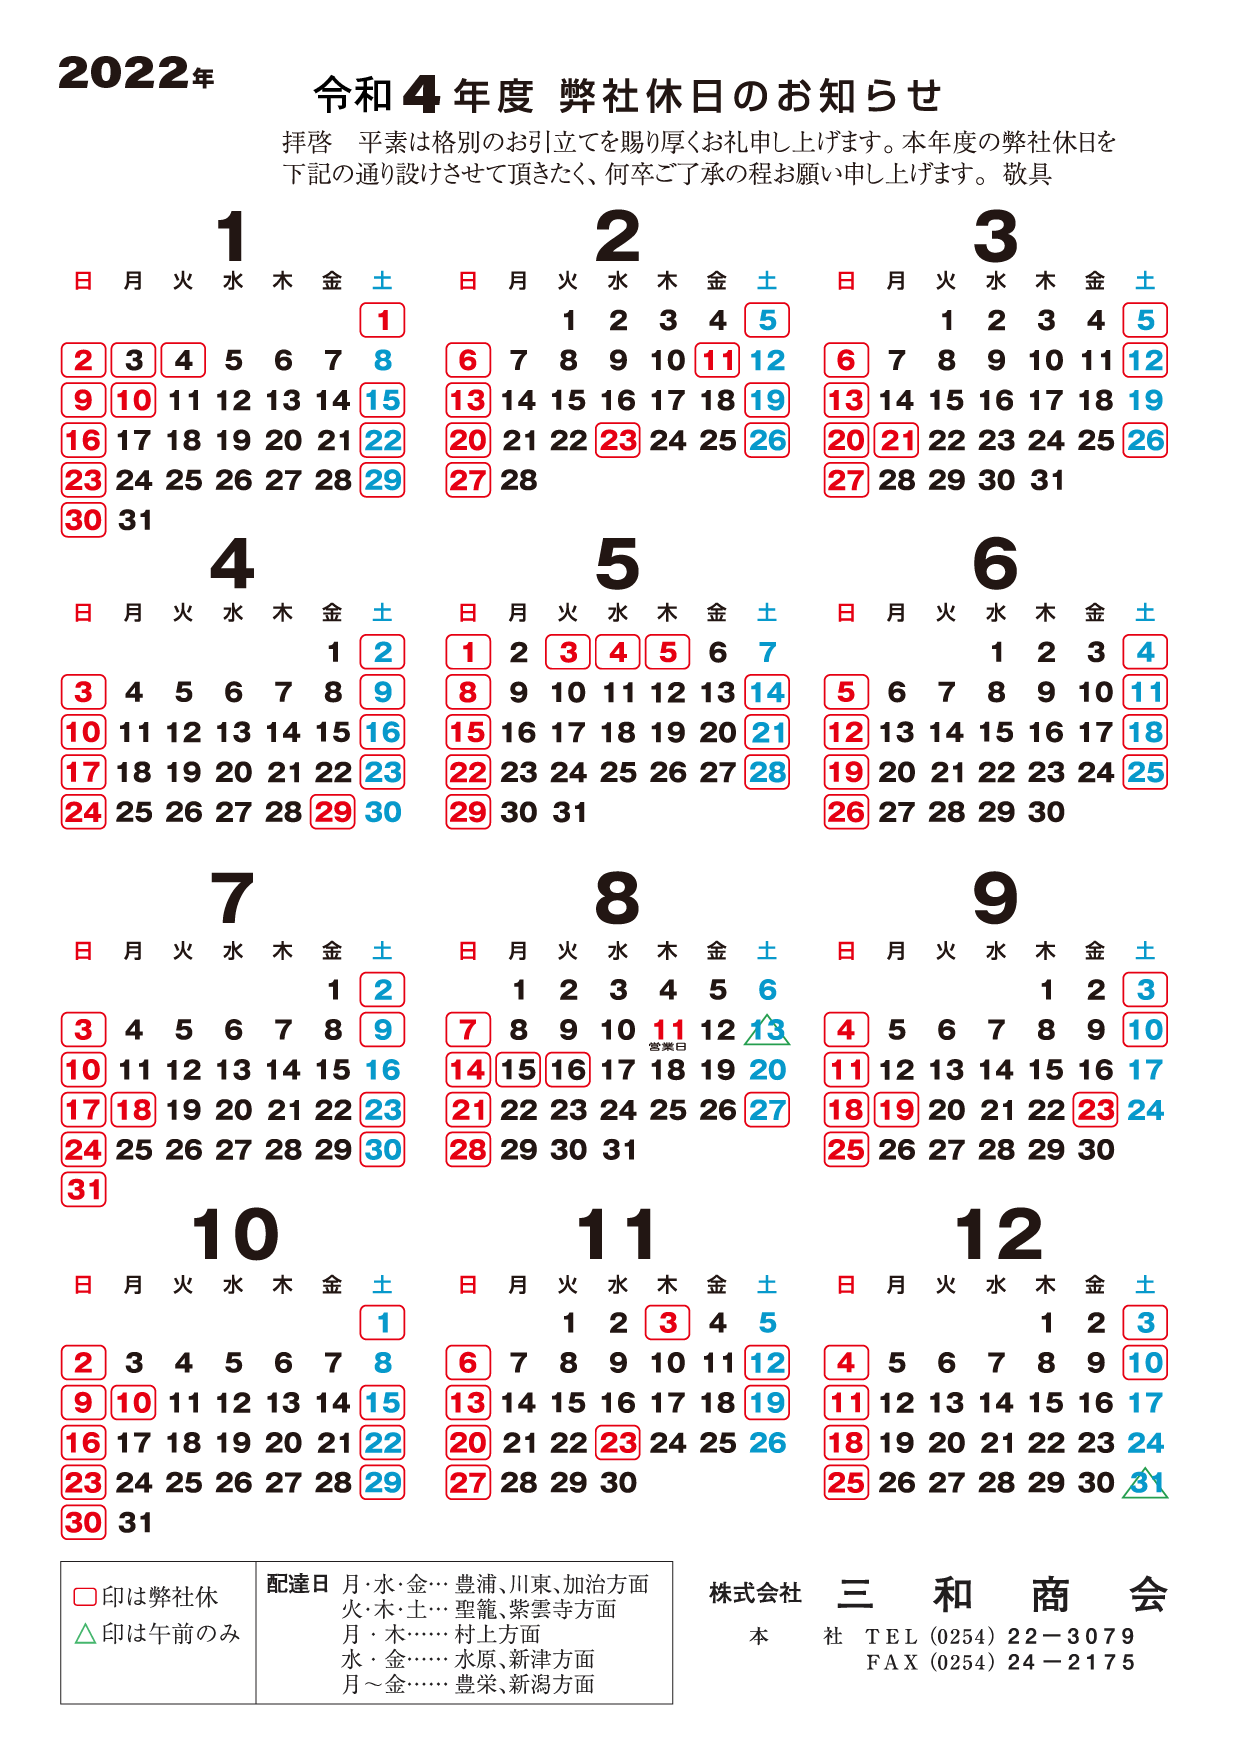 2022年 営業カレンダー